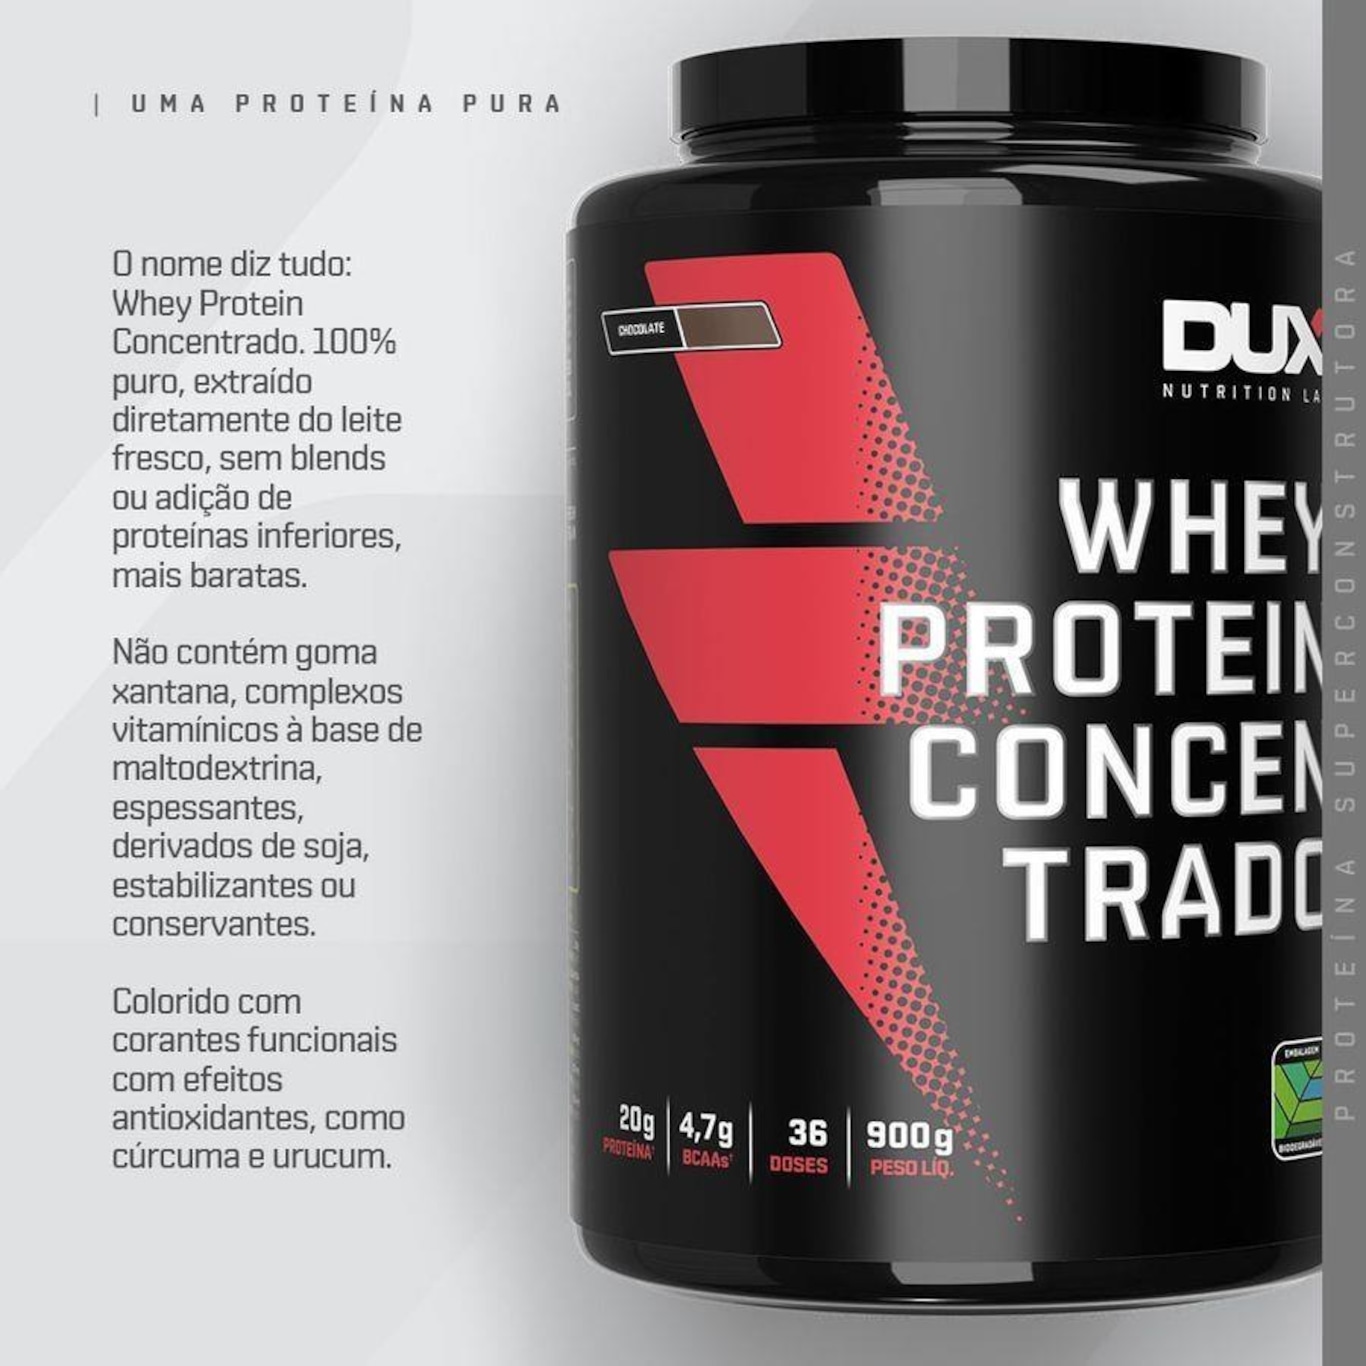 Whey Protein Concentrado - Conheça seus benefícios